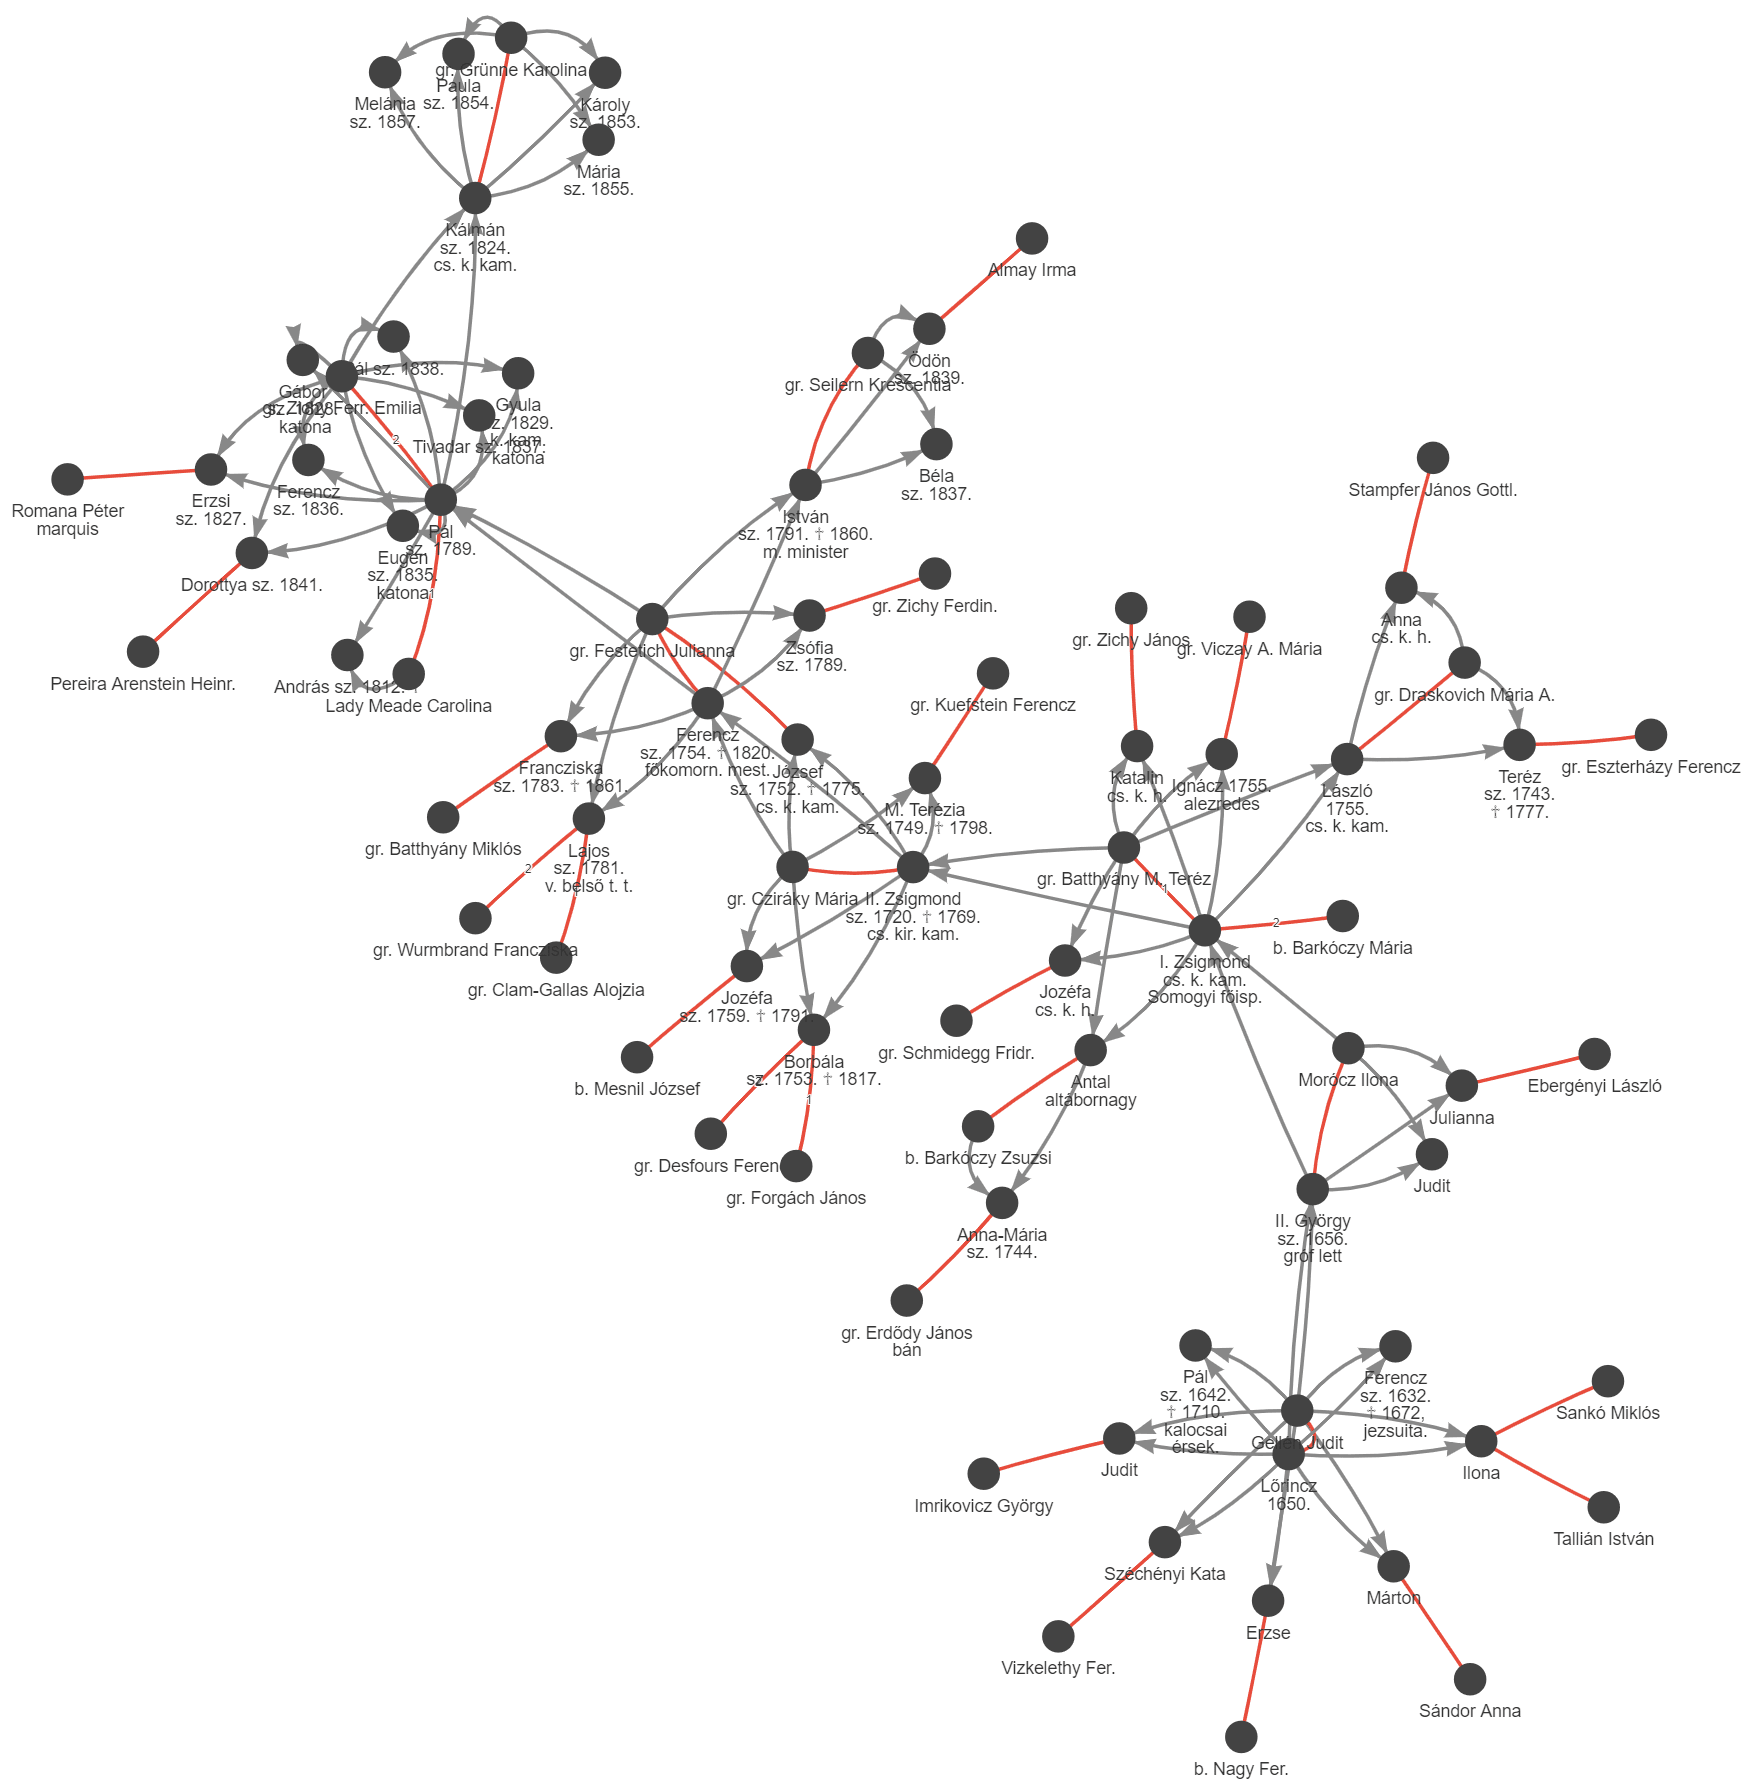 A Széchényi nemzetség genealógiájának fenti részlete hálózatként ábrázolva